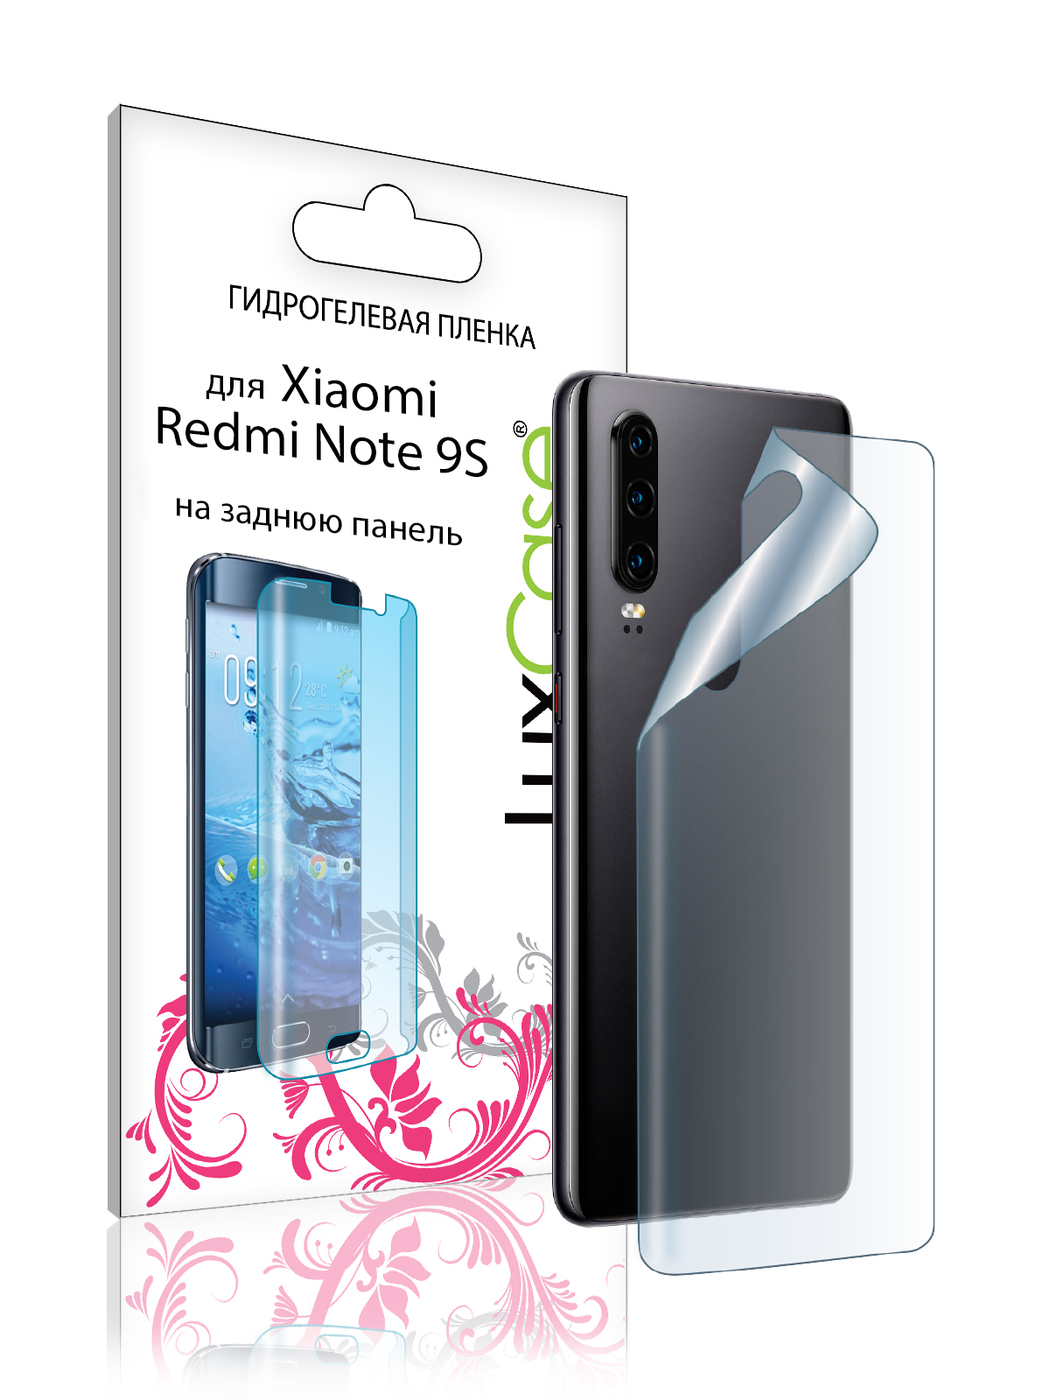 Пленка на заднюю панель LuxCase для Xiaomi Redmi Note 9S 0.14mm Transparent 86089 жидкий чехол с блестками пара на краю света на xiaomi redmi note 9s сяоми редми нот 9s